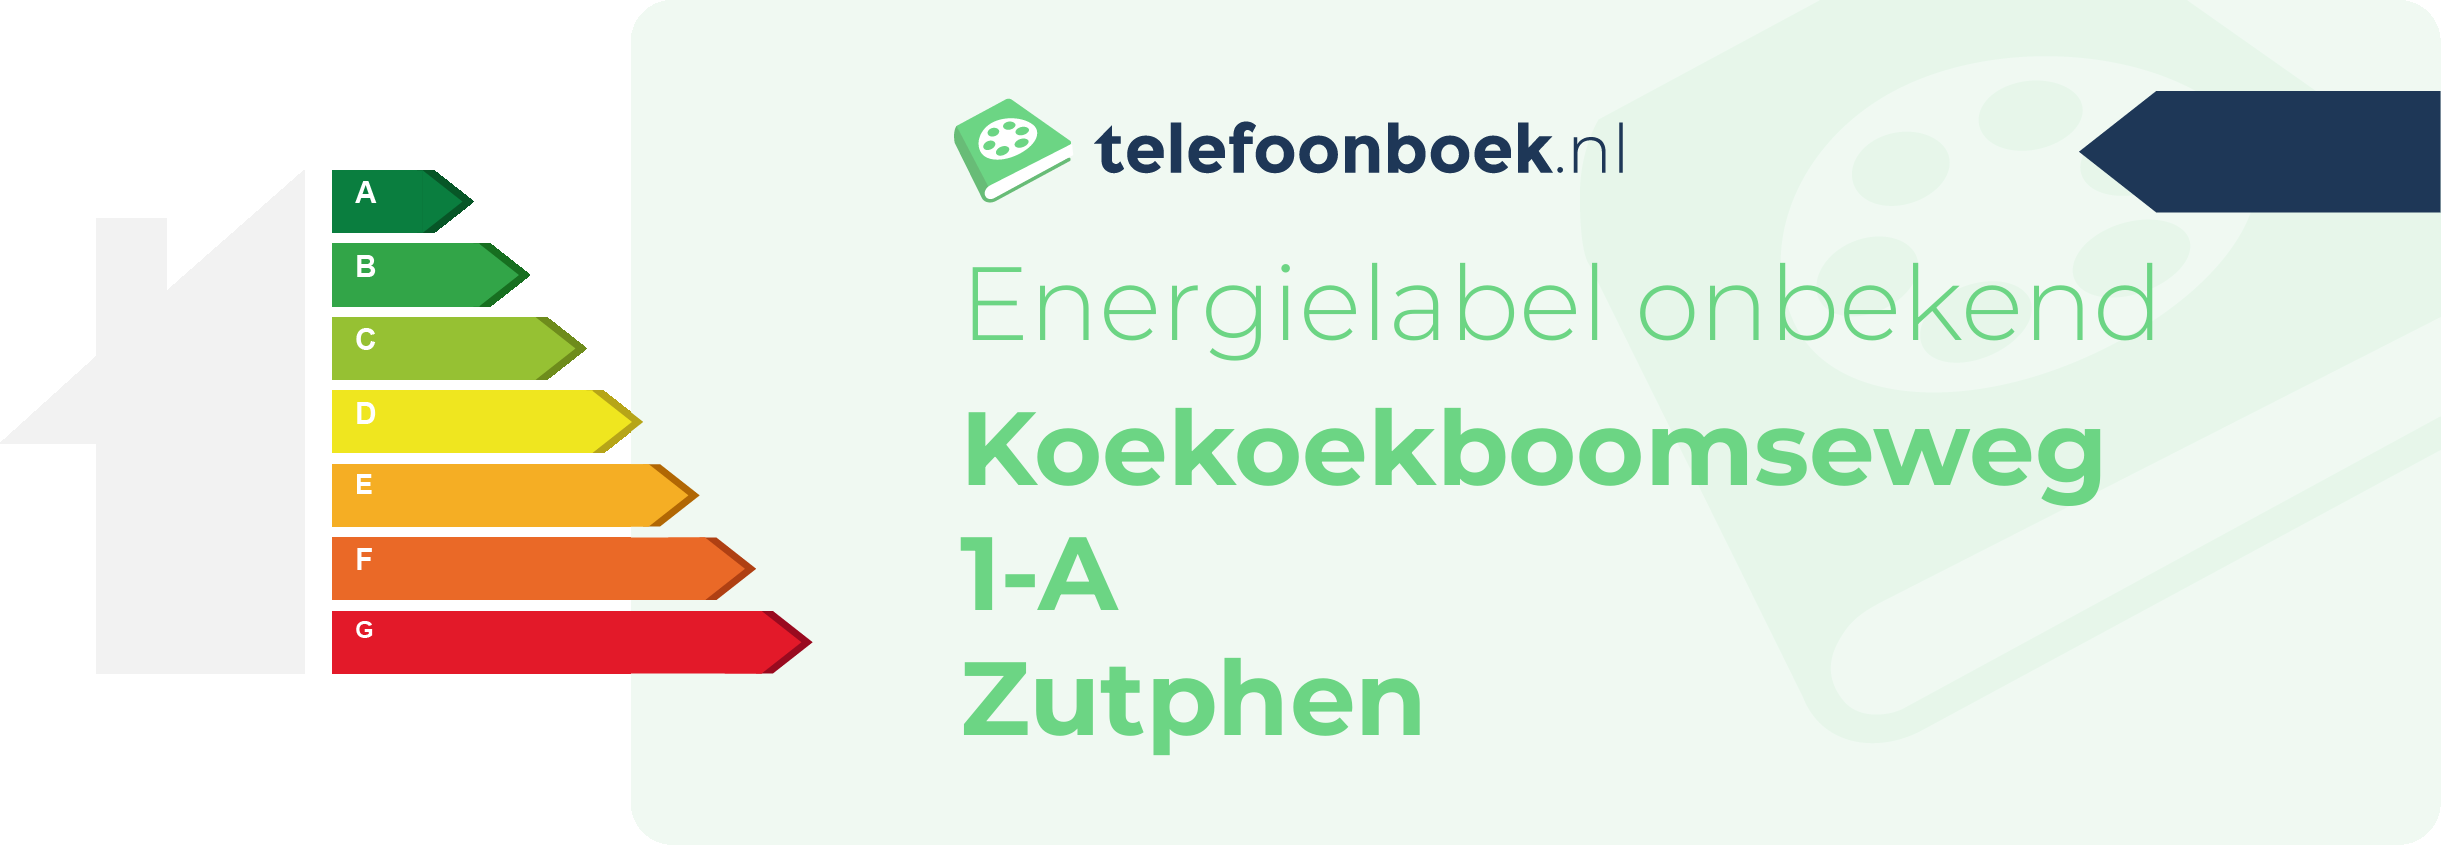 Energielabel Koekoekboomseweg 1-A Zutphen